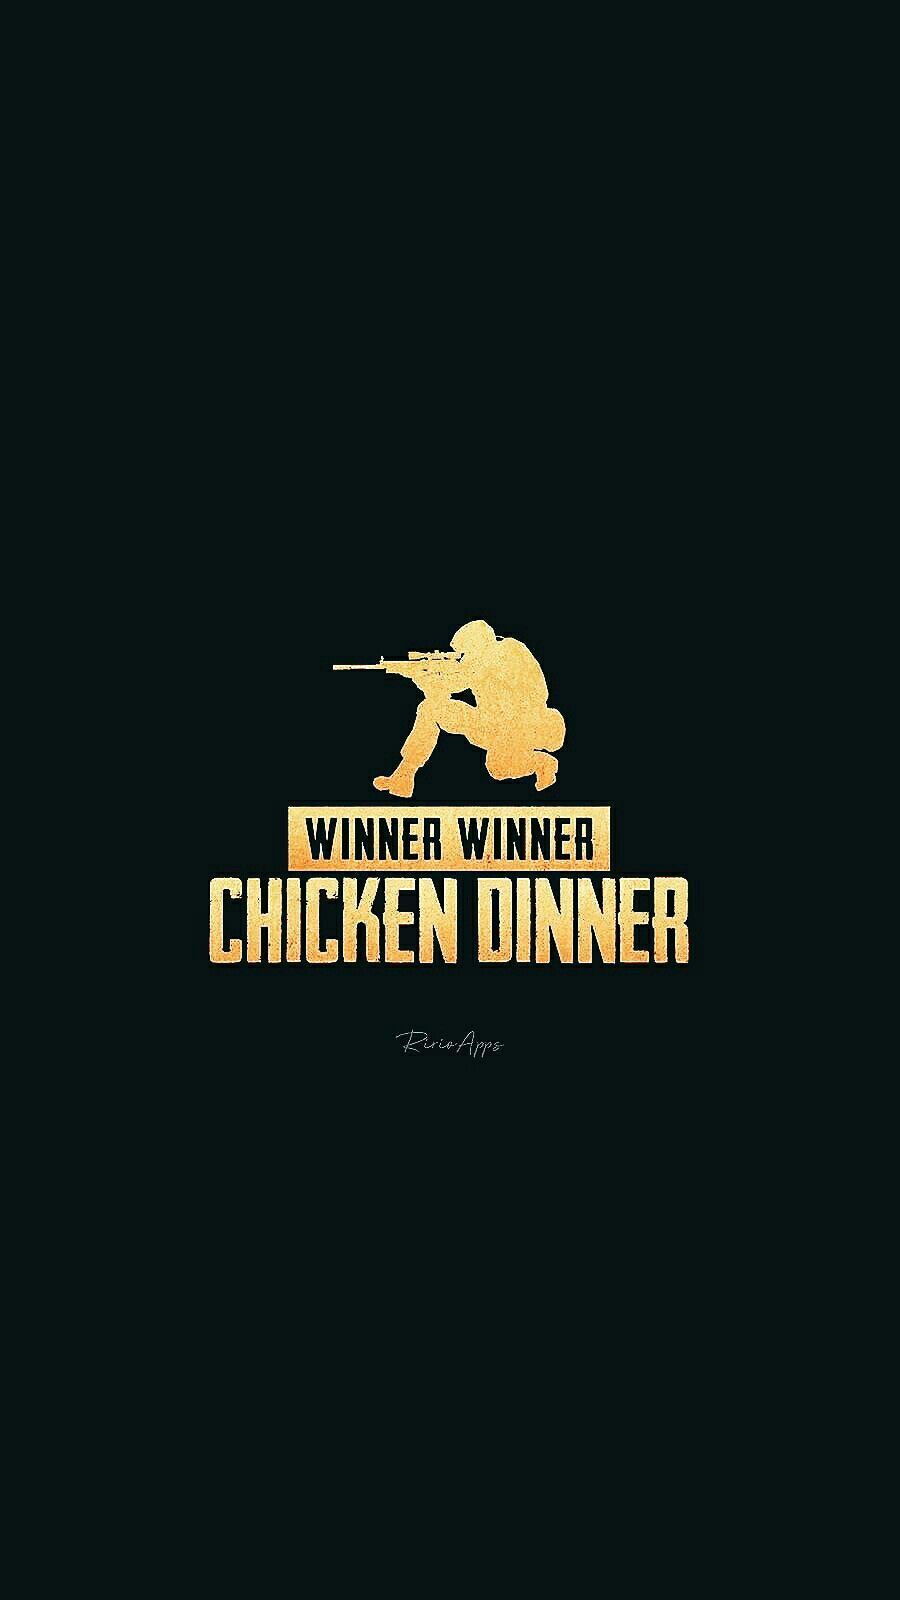 pubg wallpaper winner winner chicken dinner. Chicken dinner